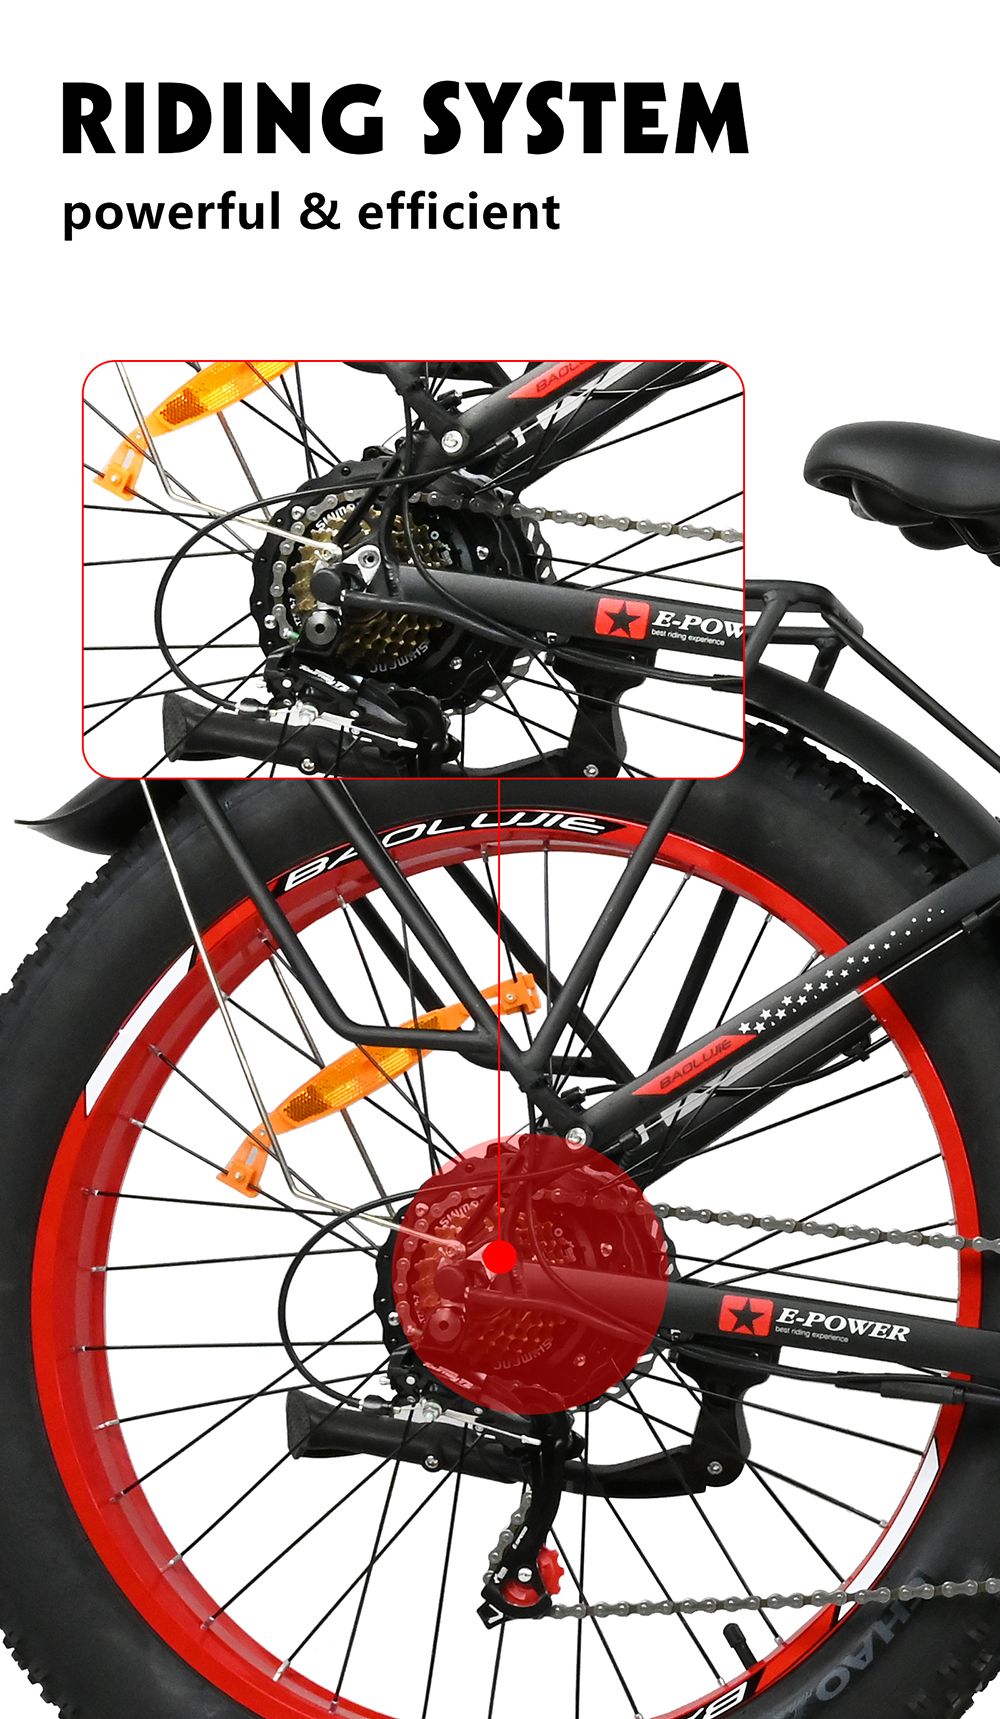 BAOLUJIE DP2619 elektromos kerékpár, 26 * 4.0 hüvelykes Fat Tire 750 W motor 48 V 13 Ah Akkumulátor 45 km/h Max sebesség 45 km Maximális hatótáv SHIMANO 7 sebességes LCD kijelző - kék